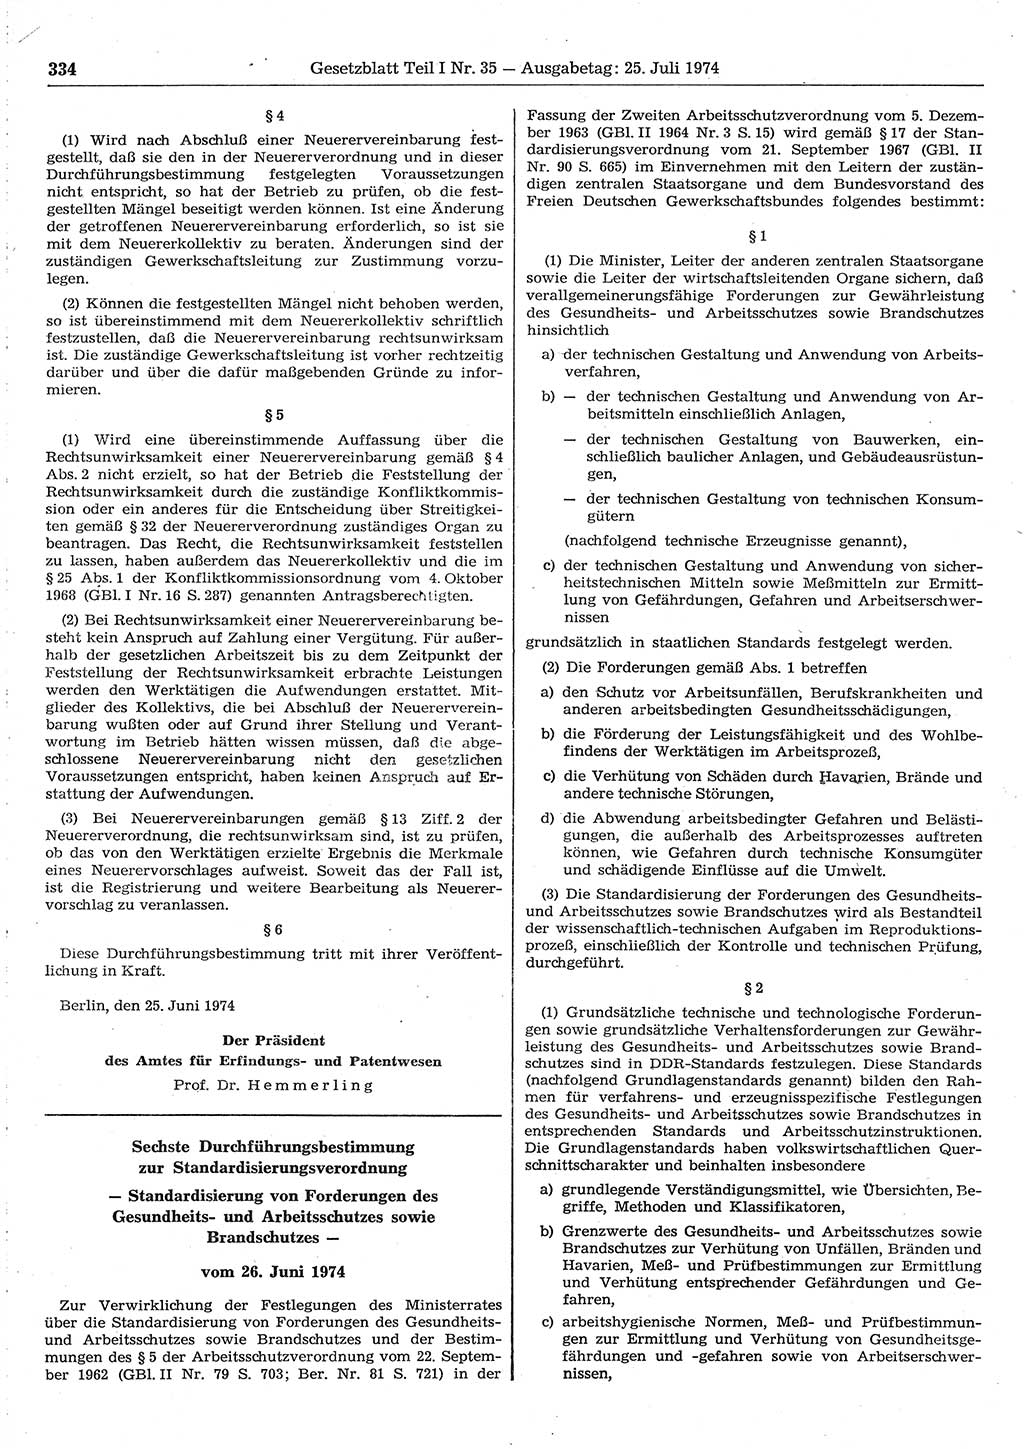 Gesetzblatt (GBl.) der Deutschen Demokratischen Republik (DDR) Teil Ⅰ 1974, Seite 334 (GBl. DDR Ⅰ 1974, S. 334)